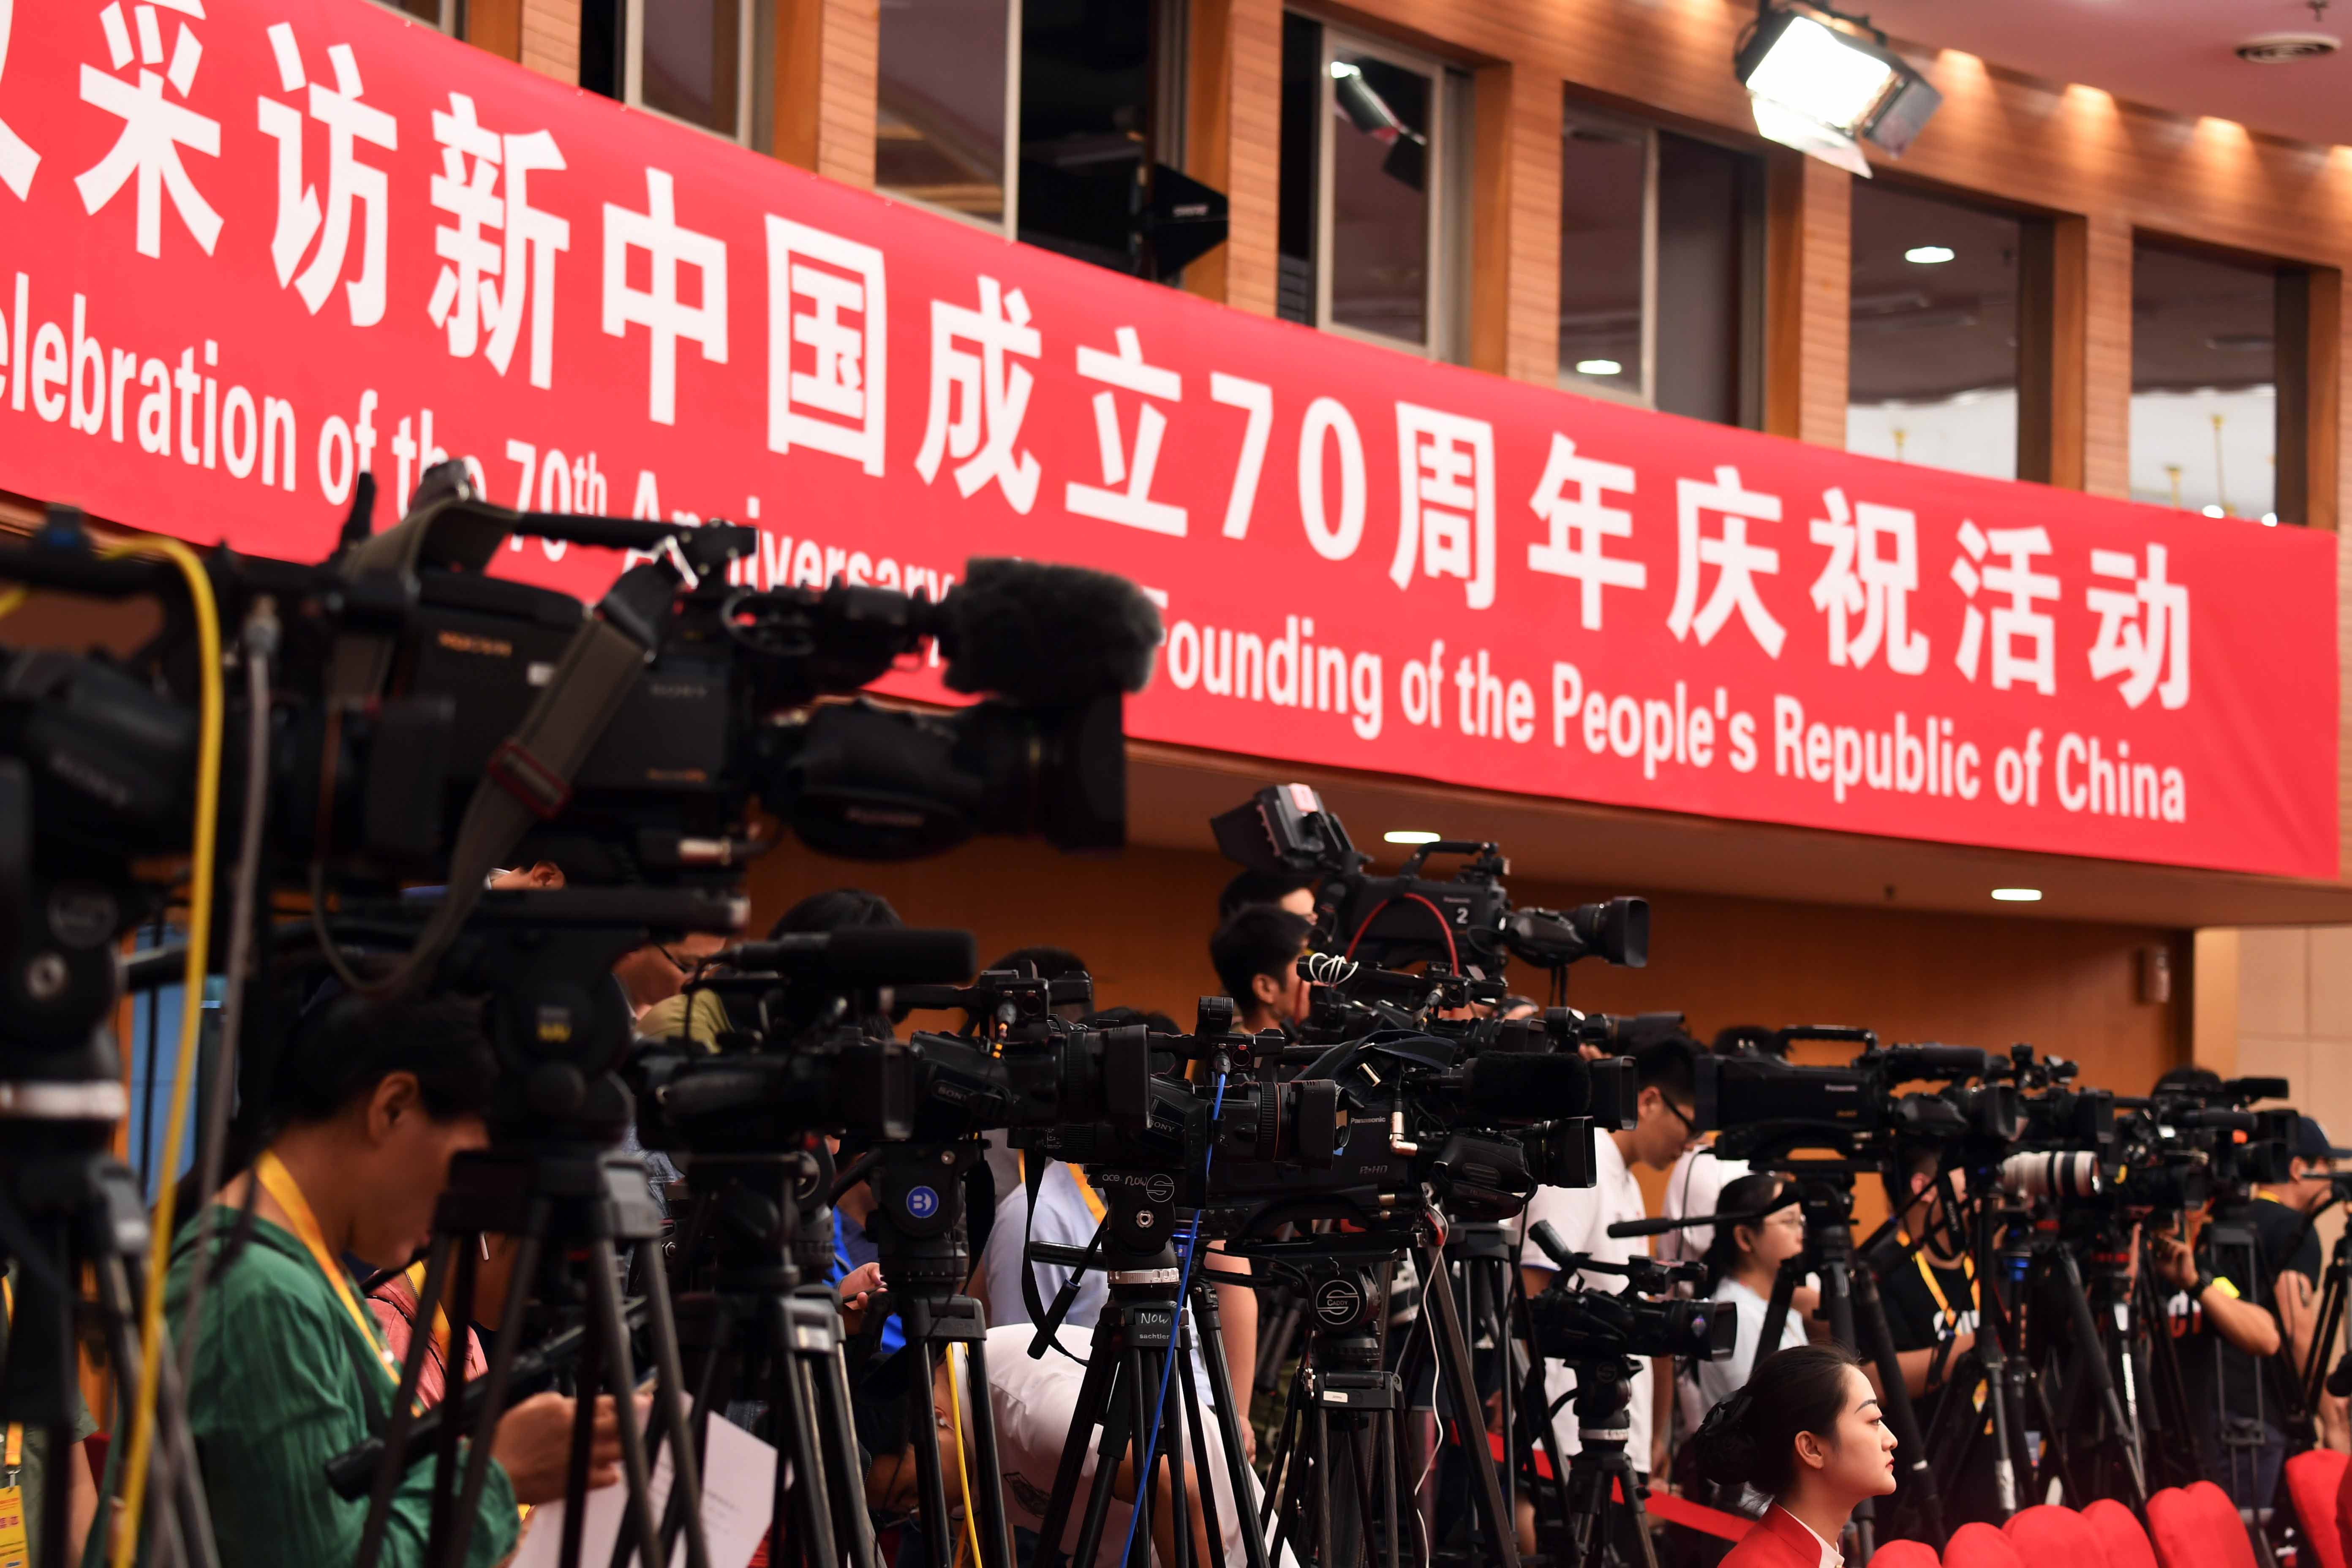 在庆祝中华人民共和国成立70周年活动新闻中心举办第一场专题集体采访的记者们。